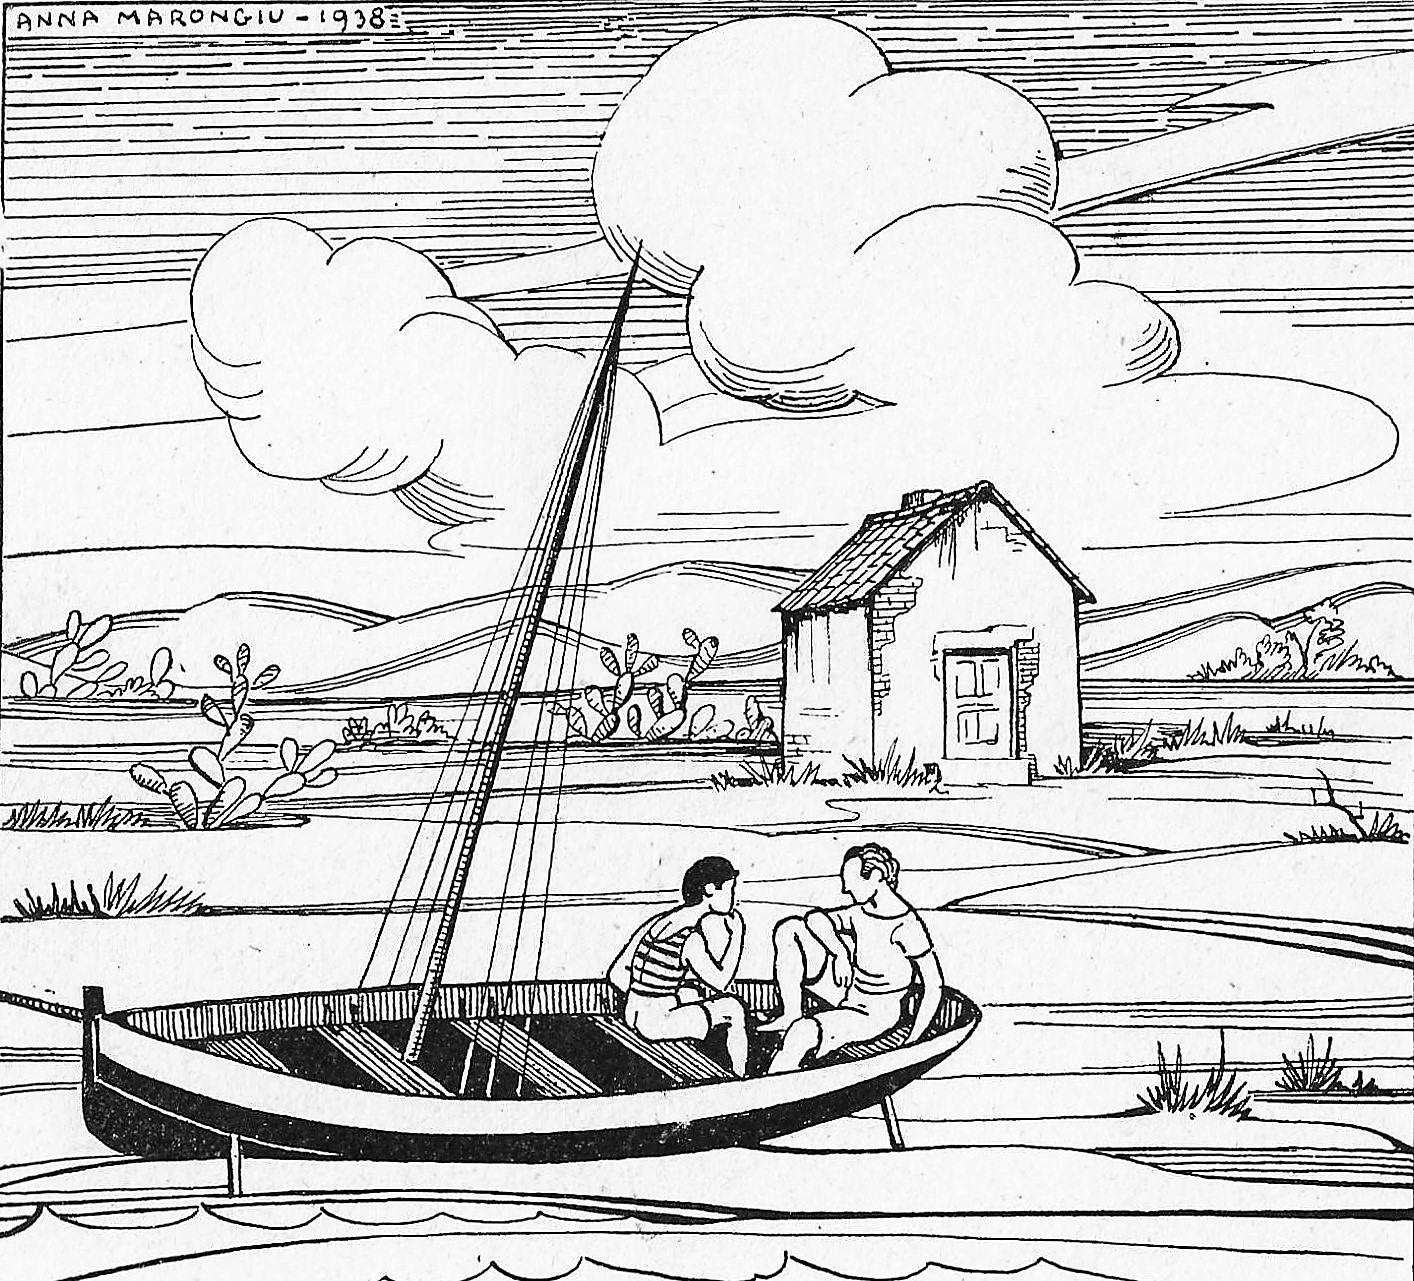 Anna Marongiu, Illustrazione per <em>La barca della fortuna</em> – 1938.